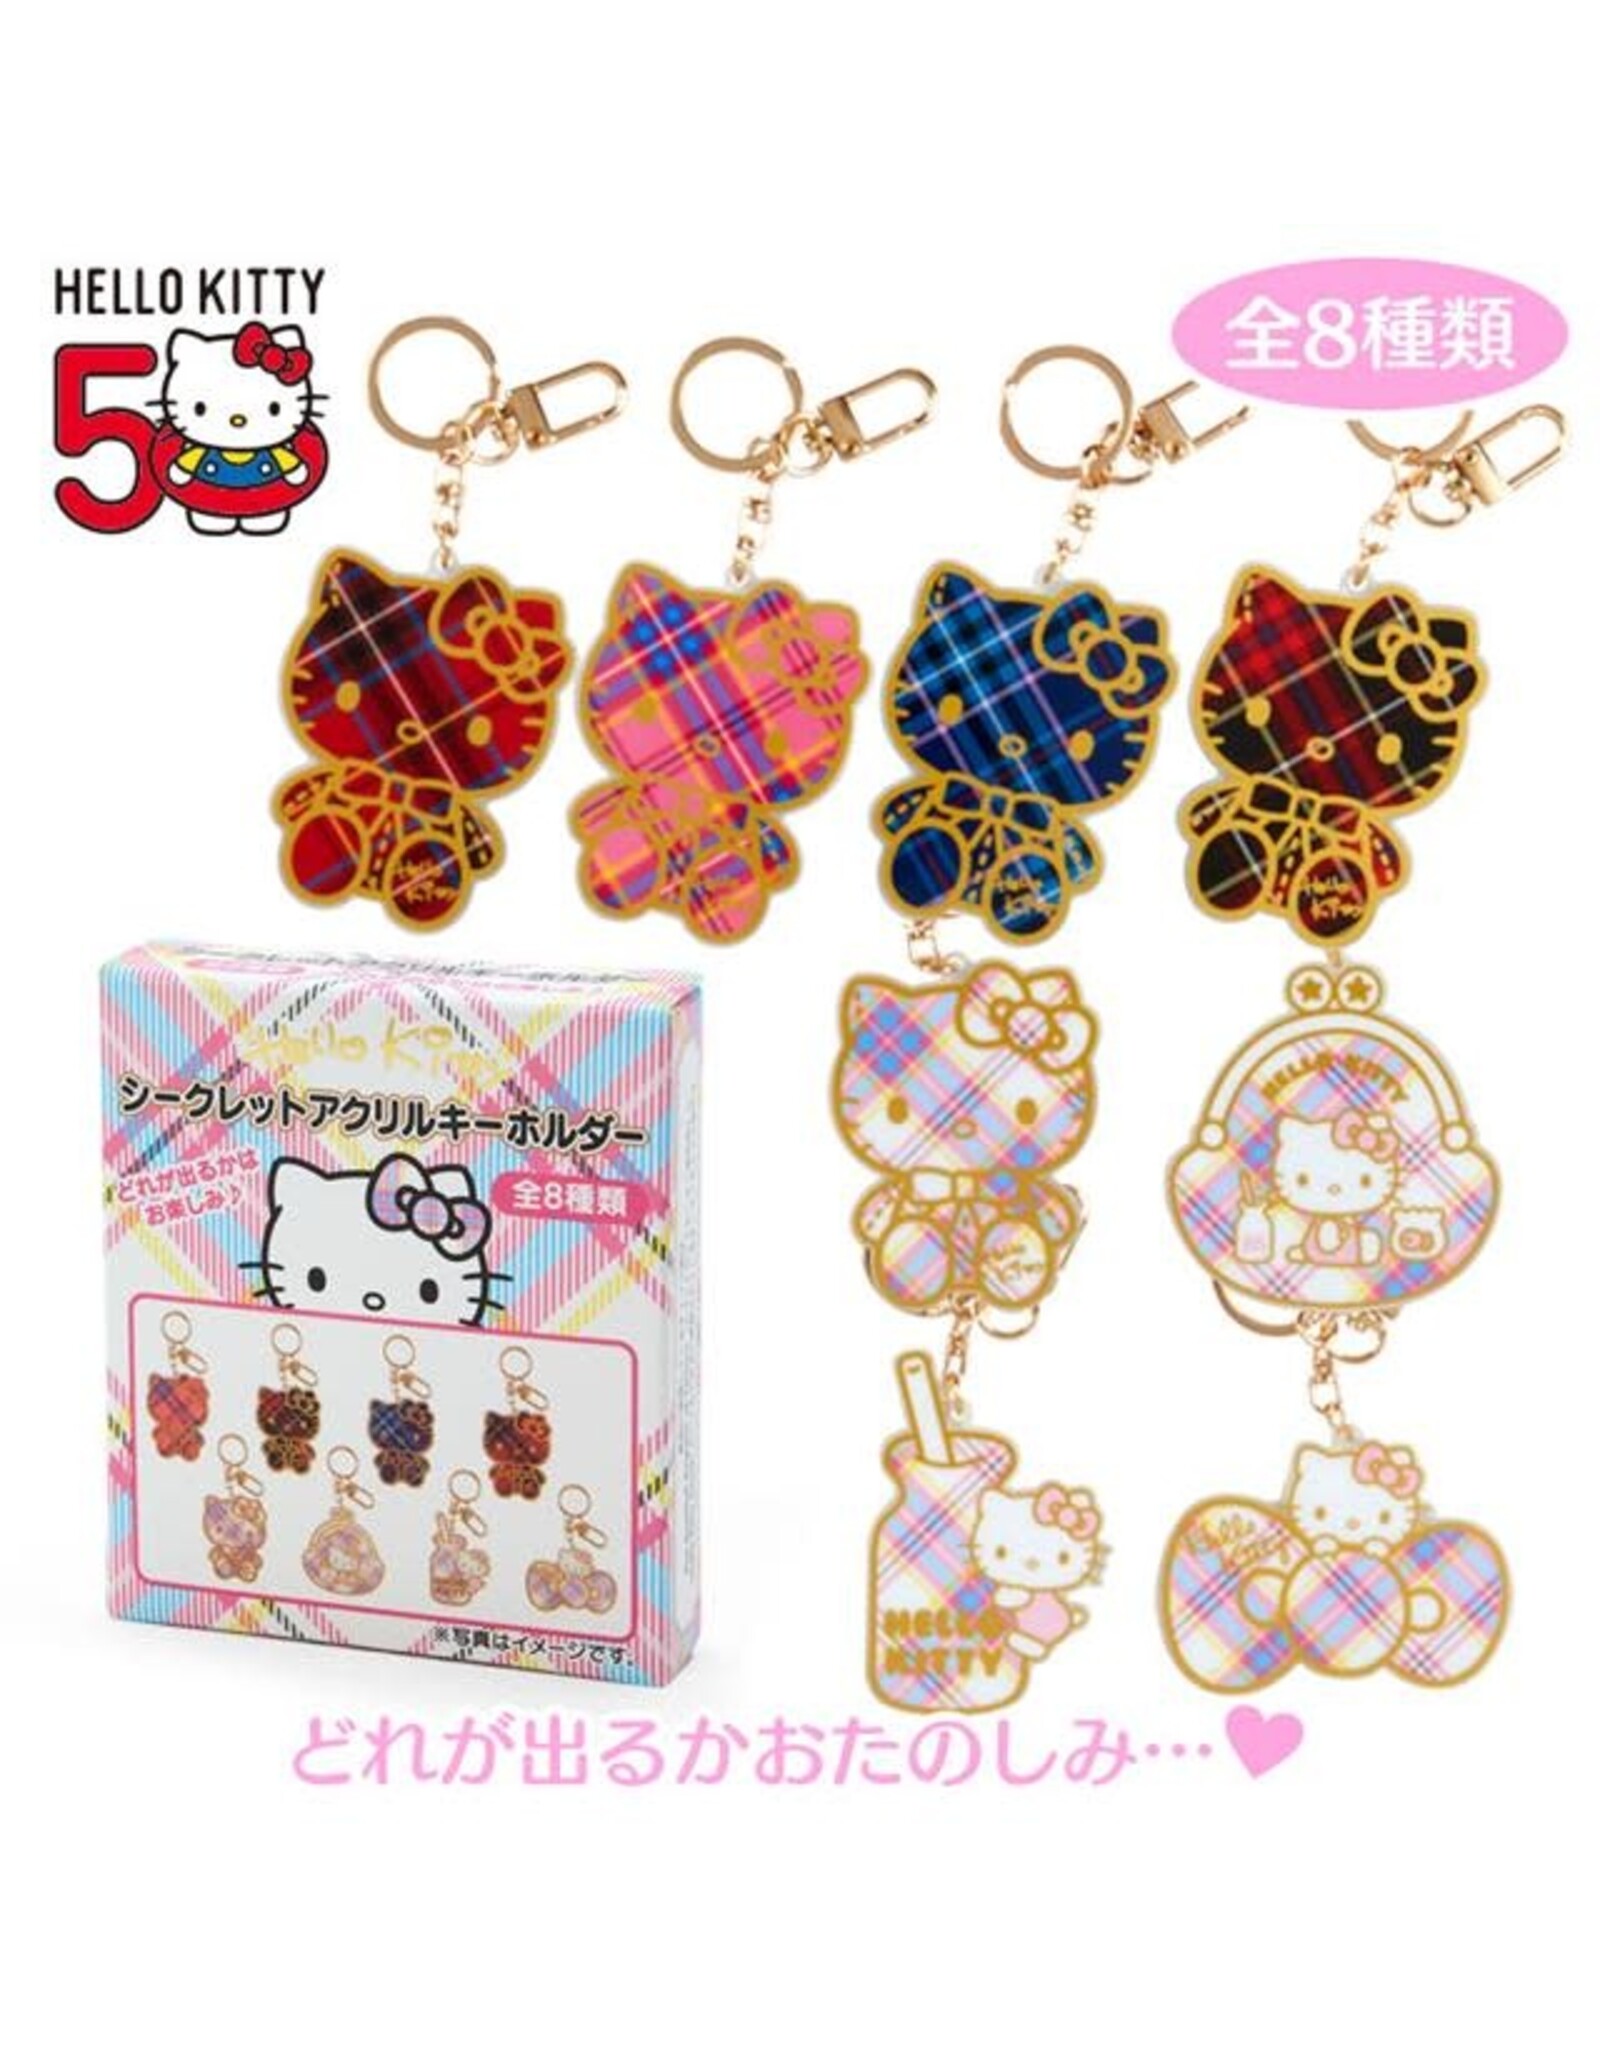 Sanrio Hello Kitty Secret Tartan Keychain